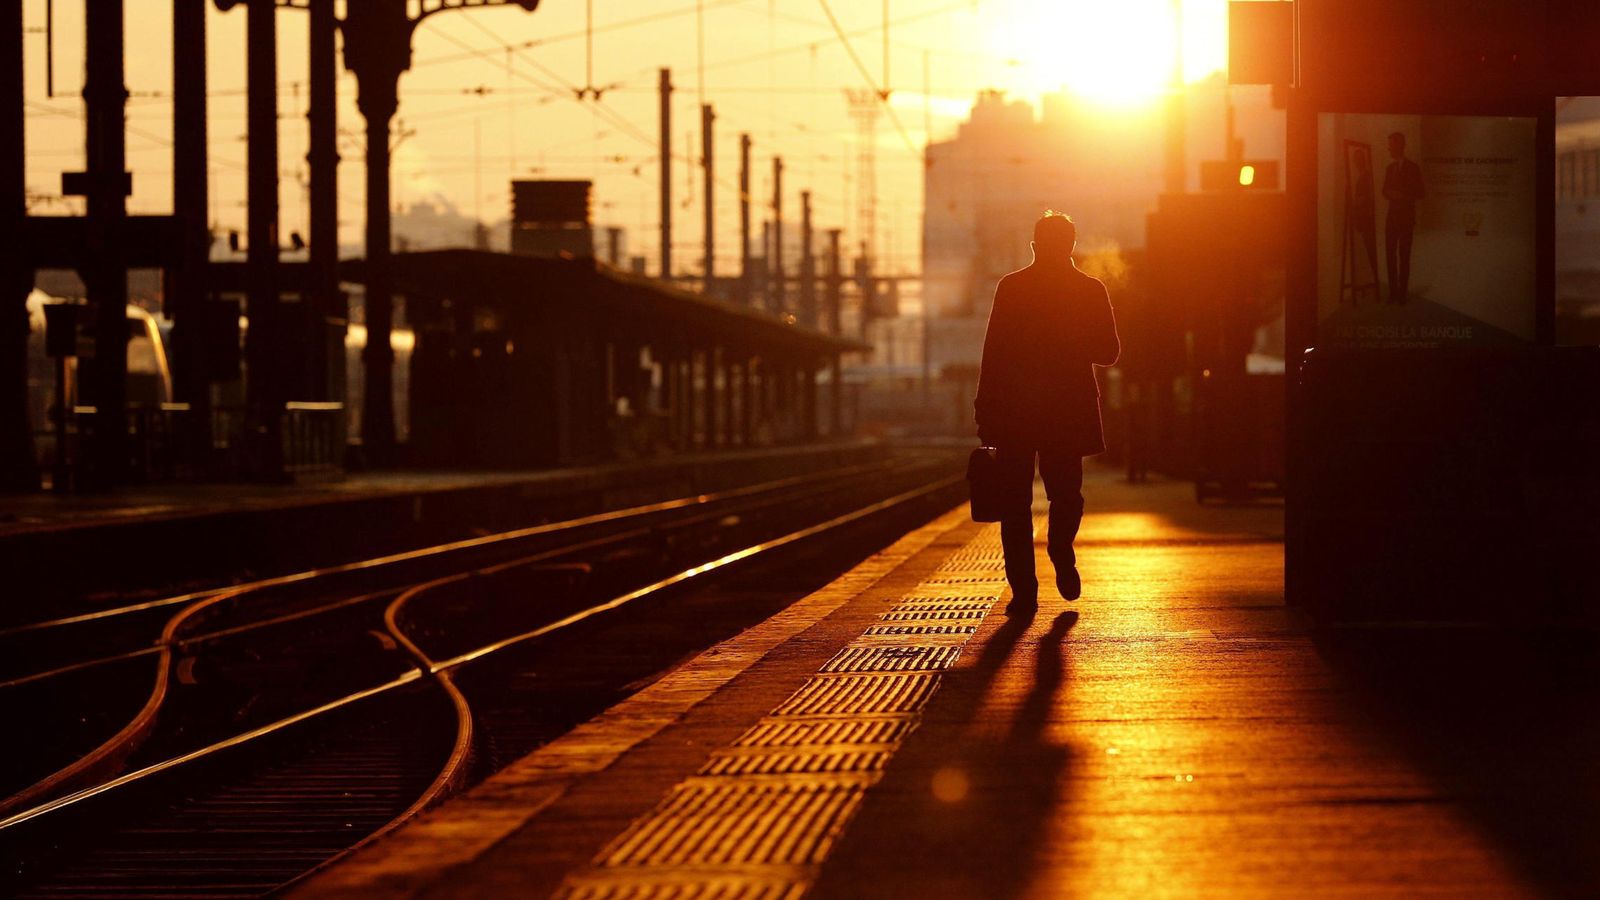 Foto: Un pasajero espera a un tren en la estación de ferrocarril parisina Gare de Lyon. (EFE)